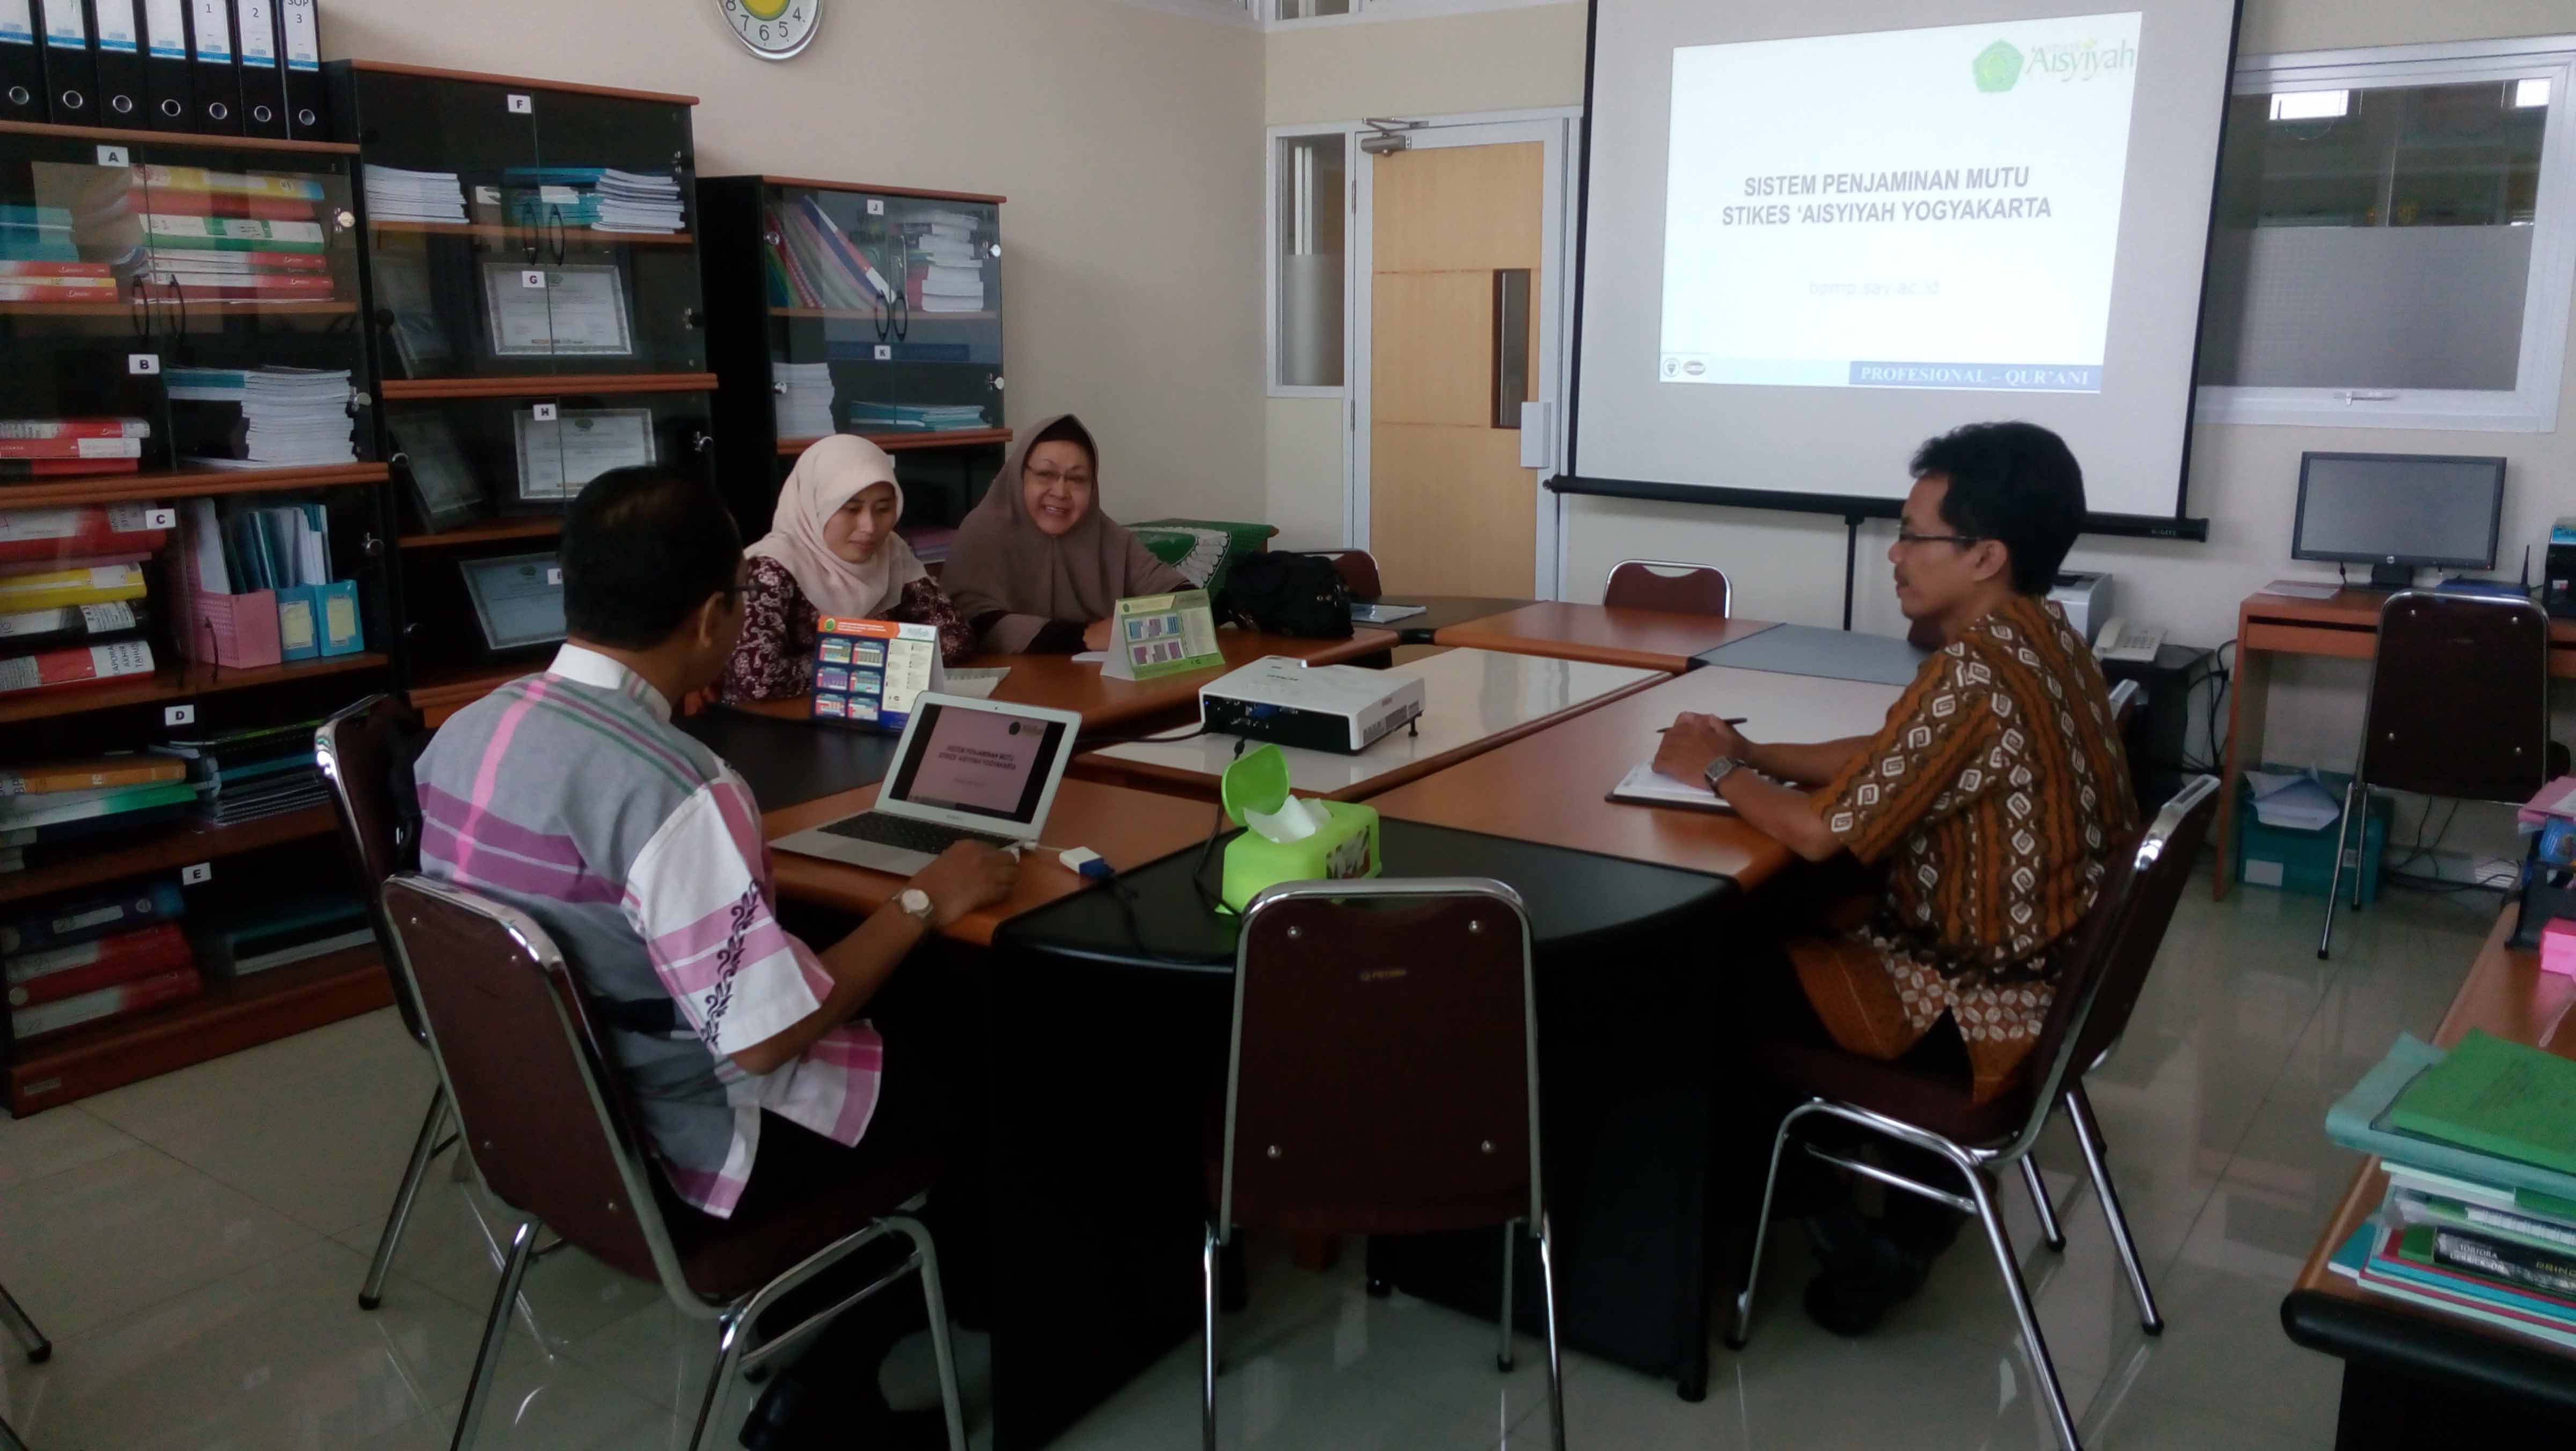 Studi Banding dari Akper Muhammadiyah Cirebon pada 25 Agustus 2015